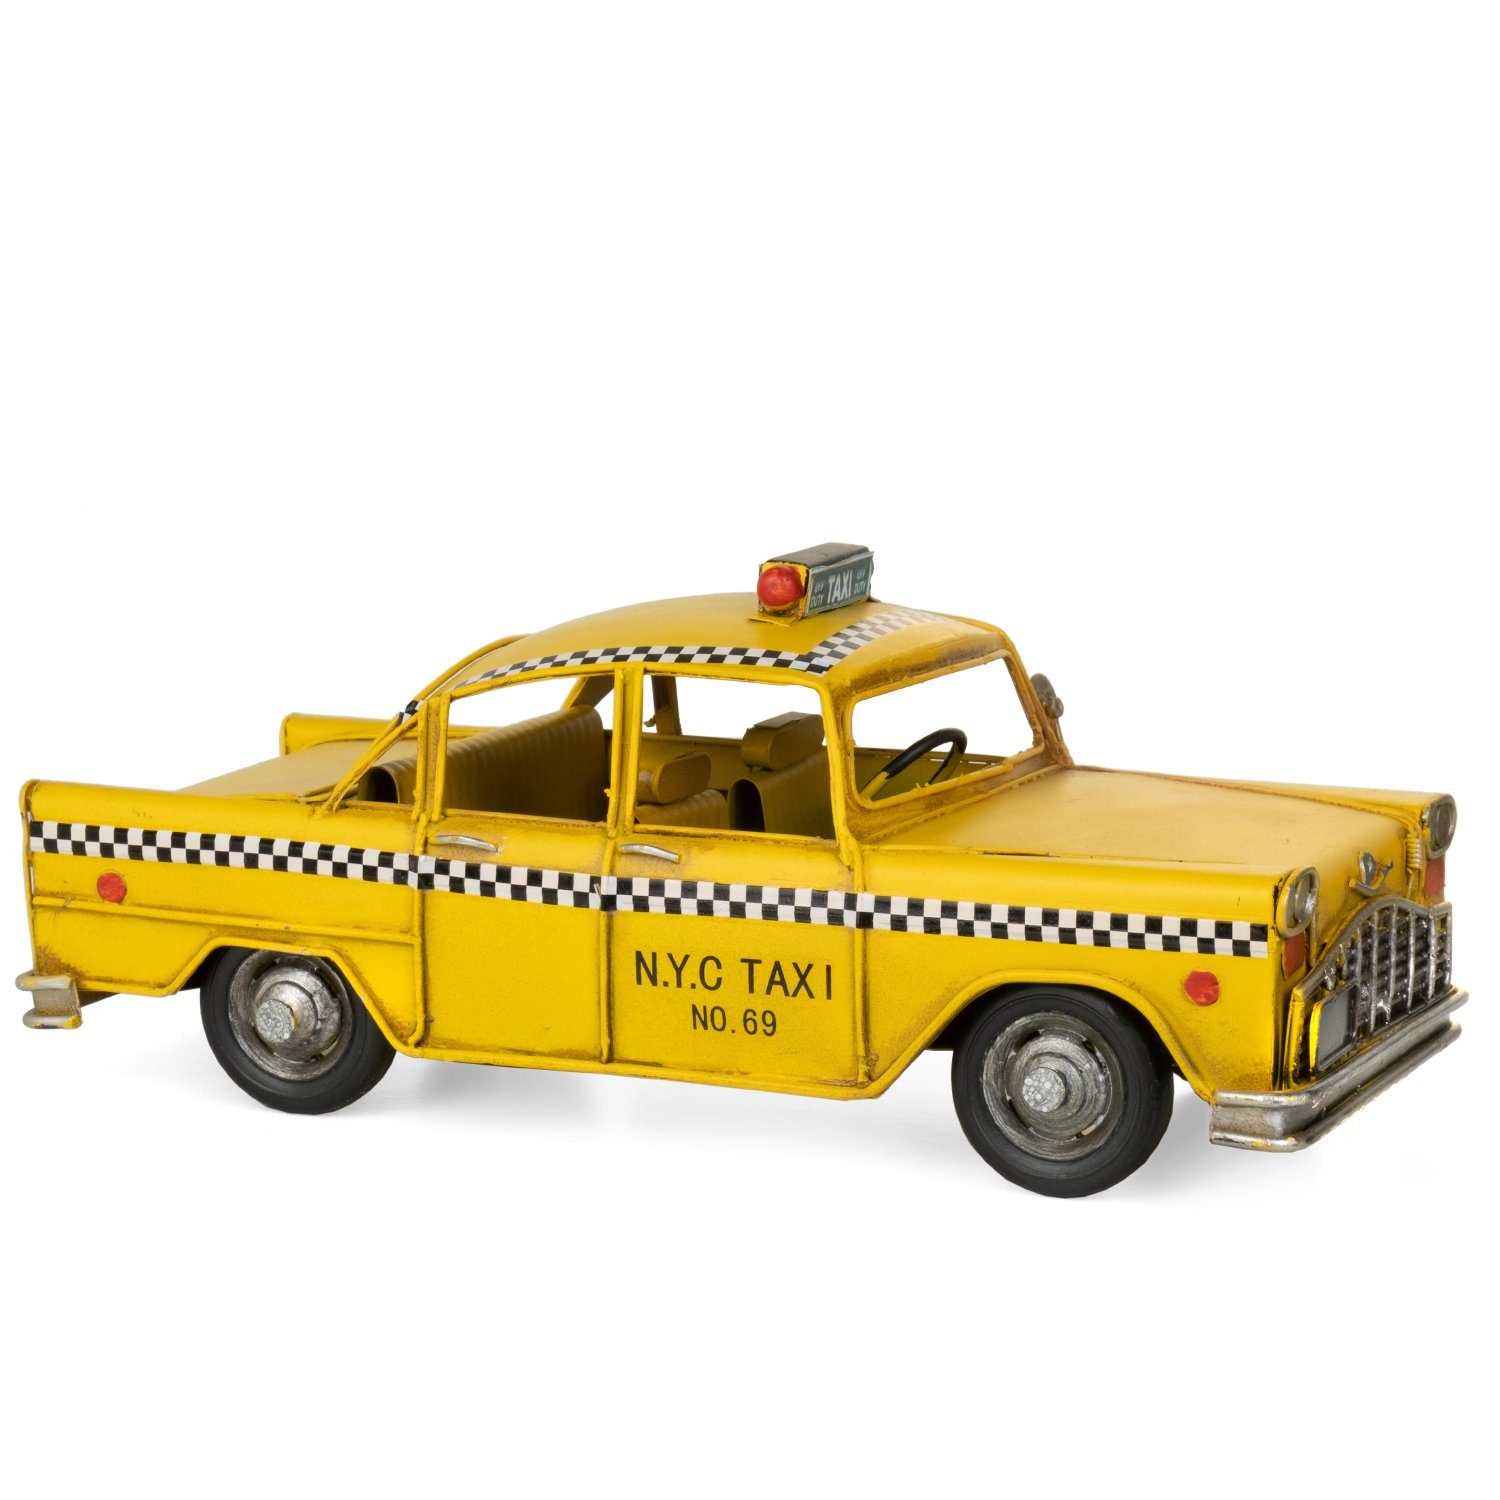 Moritz Dekoobjekt Blech-Deko Auto Blechmodell gelb, Taxi Retro Nostalgie Nachbildung Miniatur Modell Antik-Stil